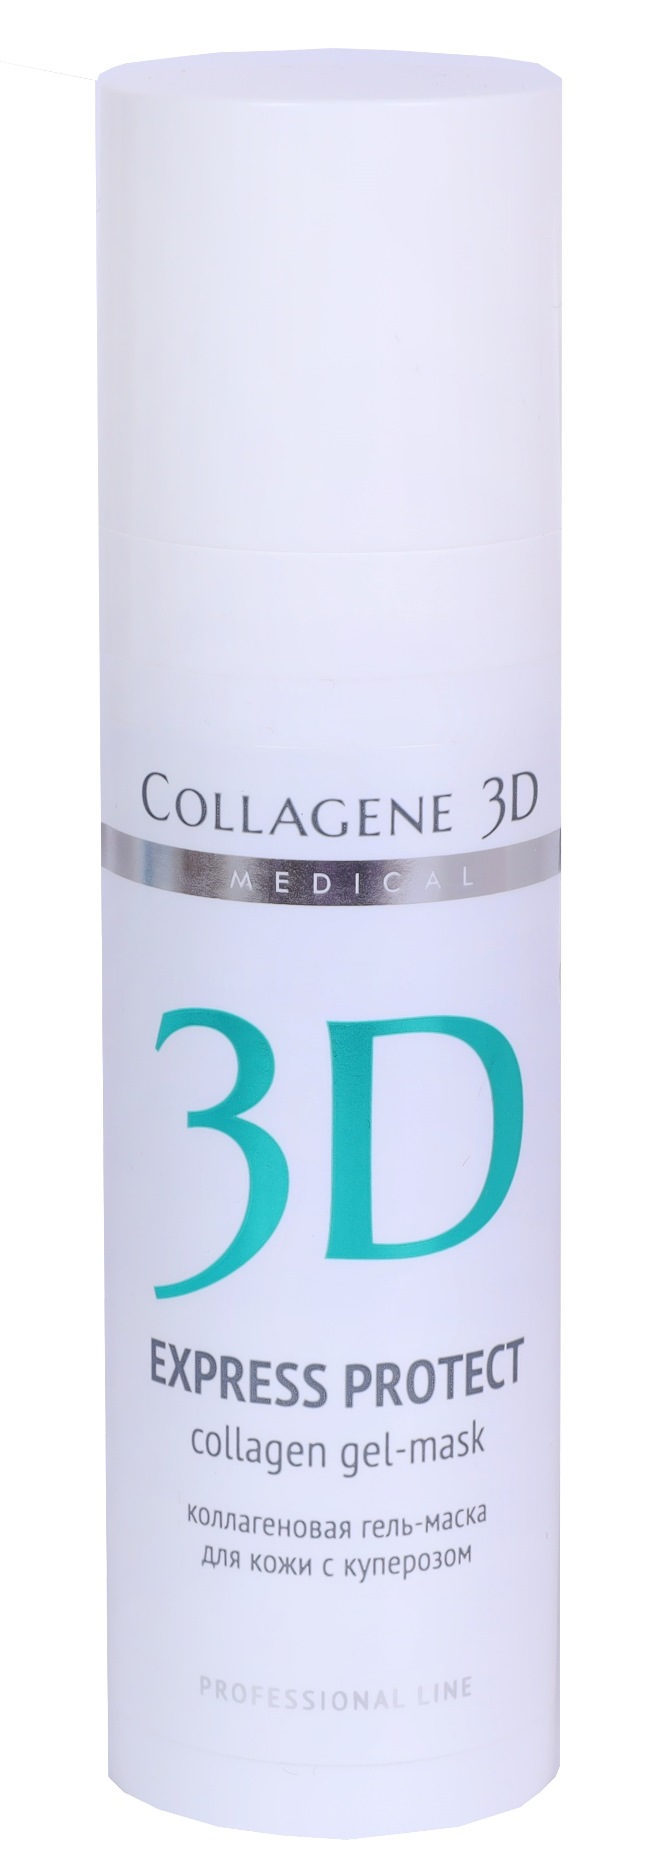 Гель-маска Medical Collagene 3D Express Protect с софорой японской 30 мл